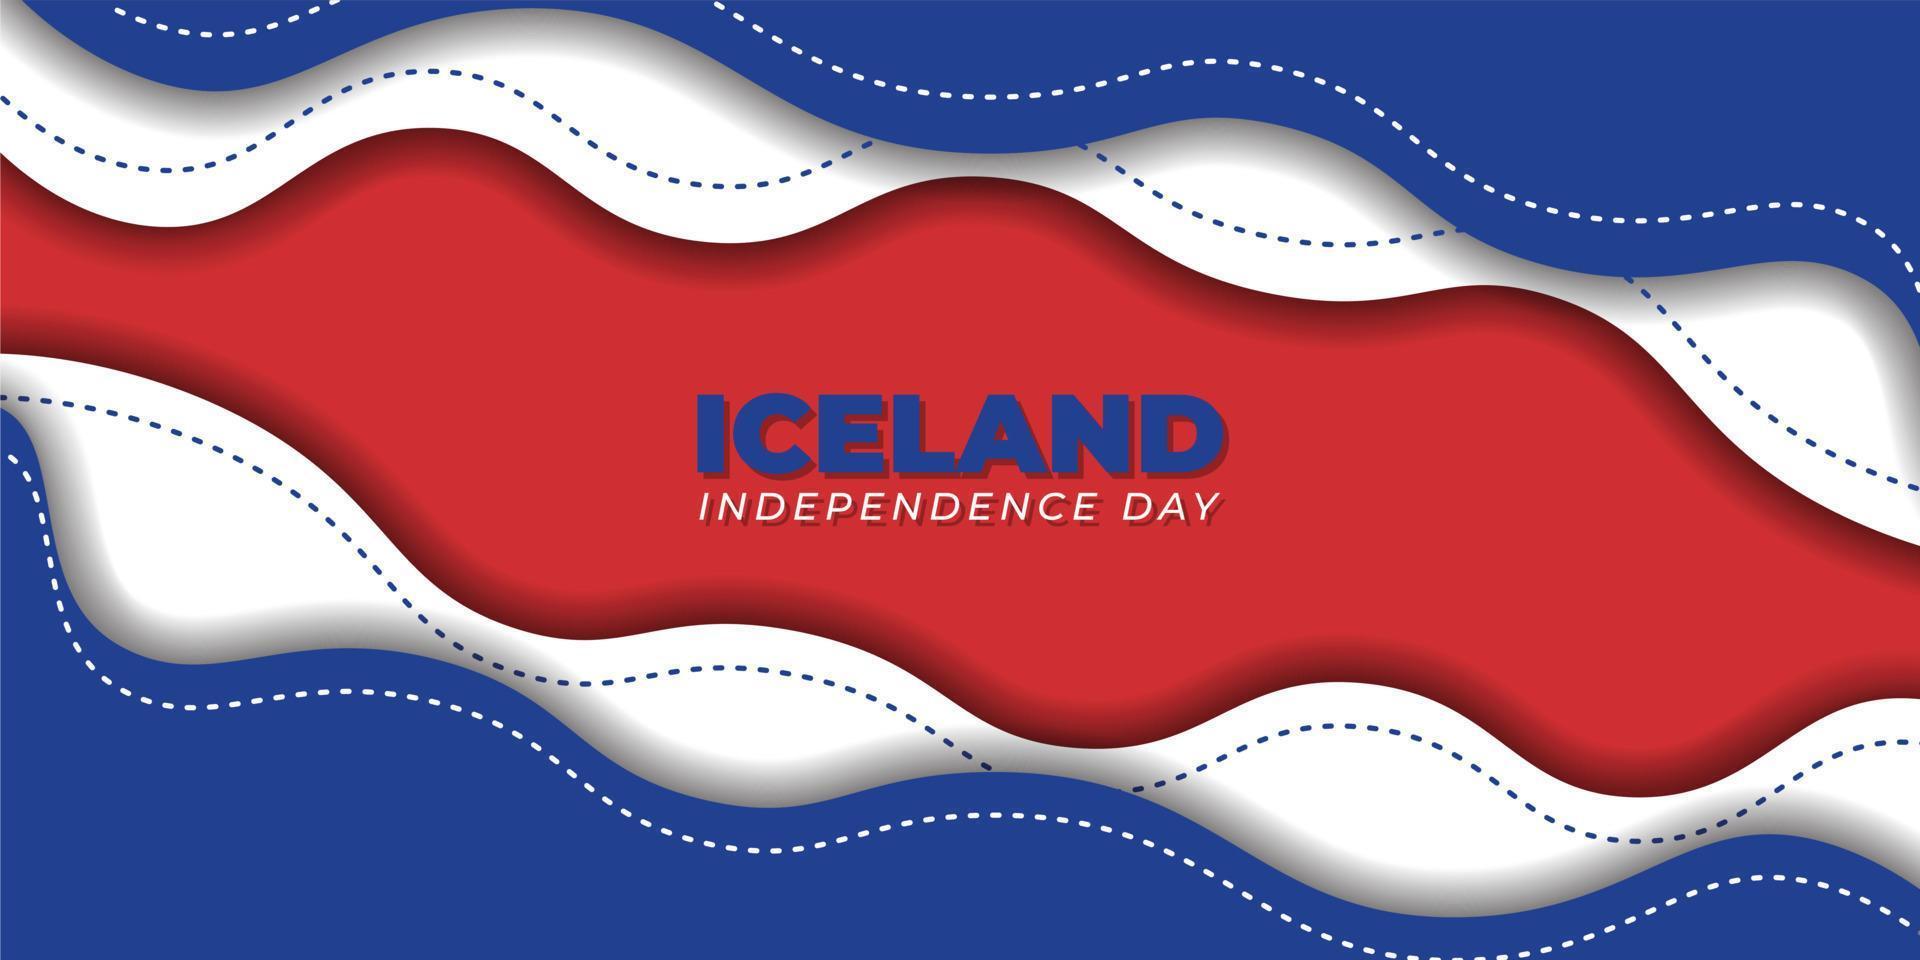 Island självständighetsdagen design med rött och blått papper cut bakgrundsdesign vektor